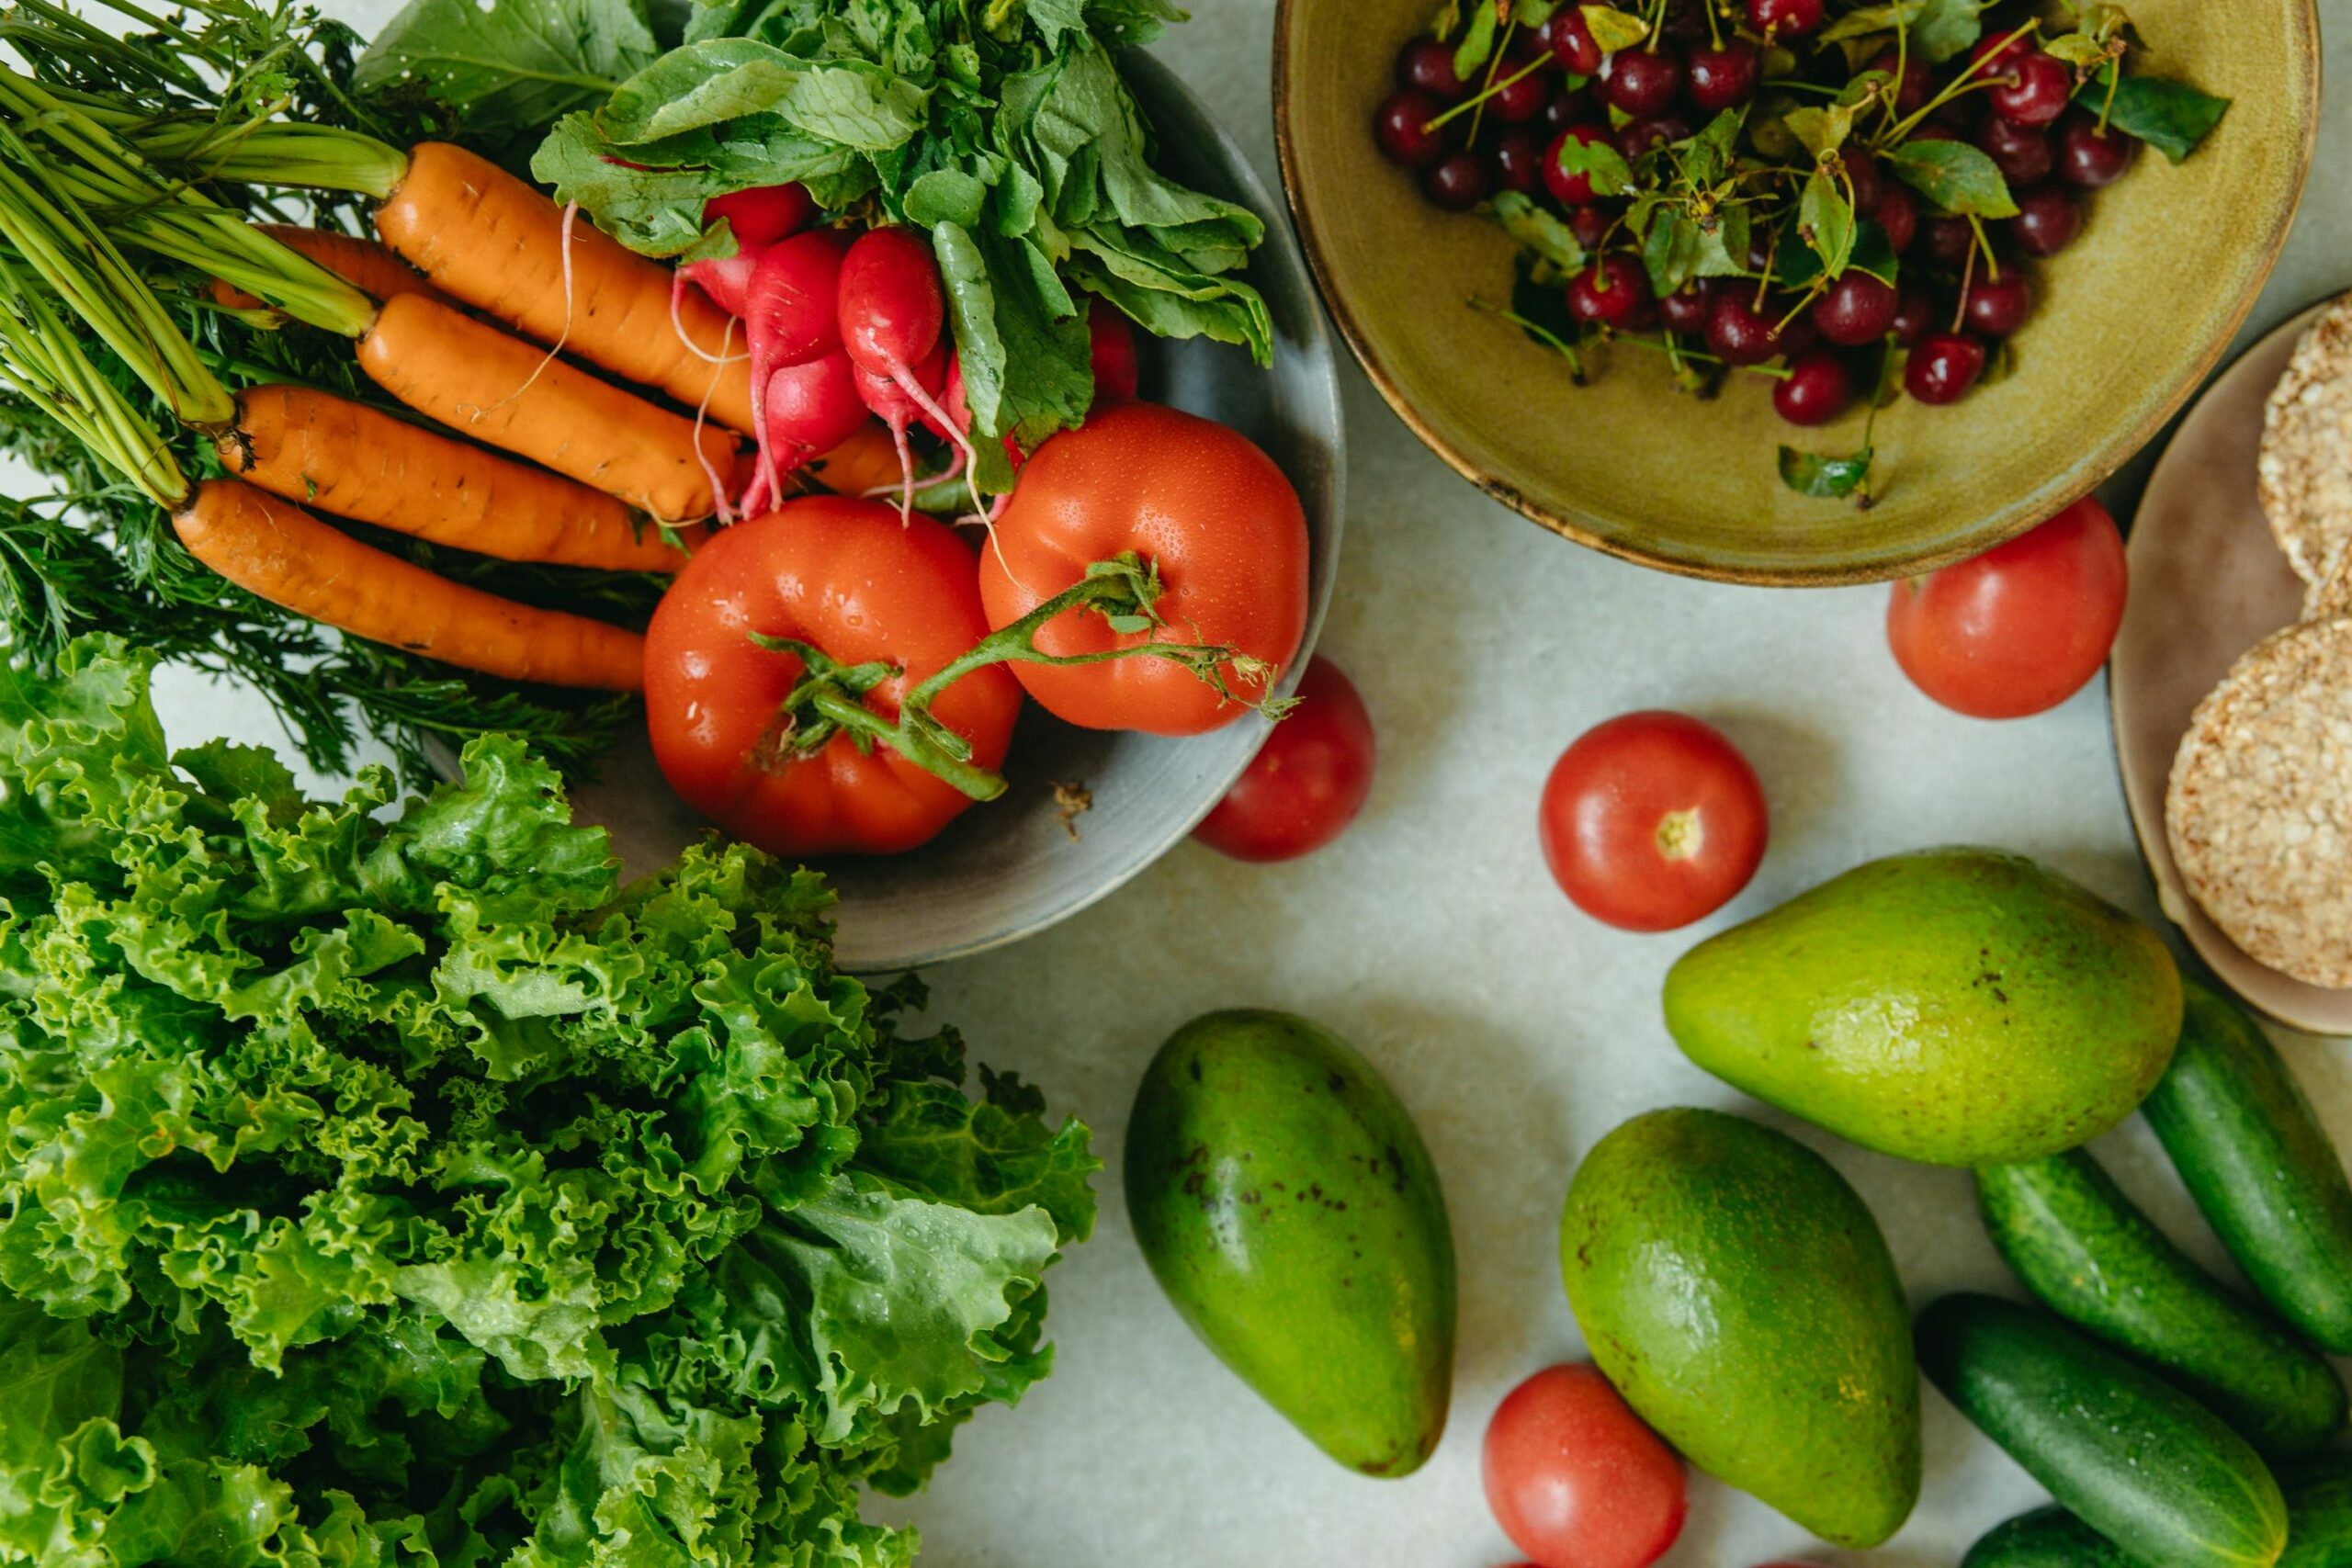 Mantenga las frutas y verduras frescas y en buen estado - Blog de